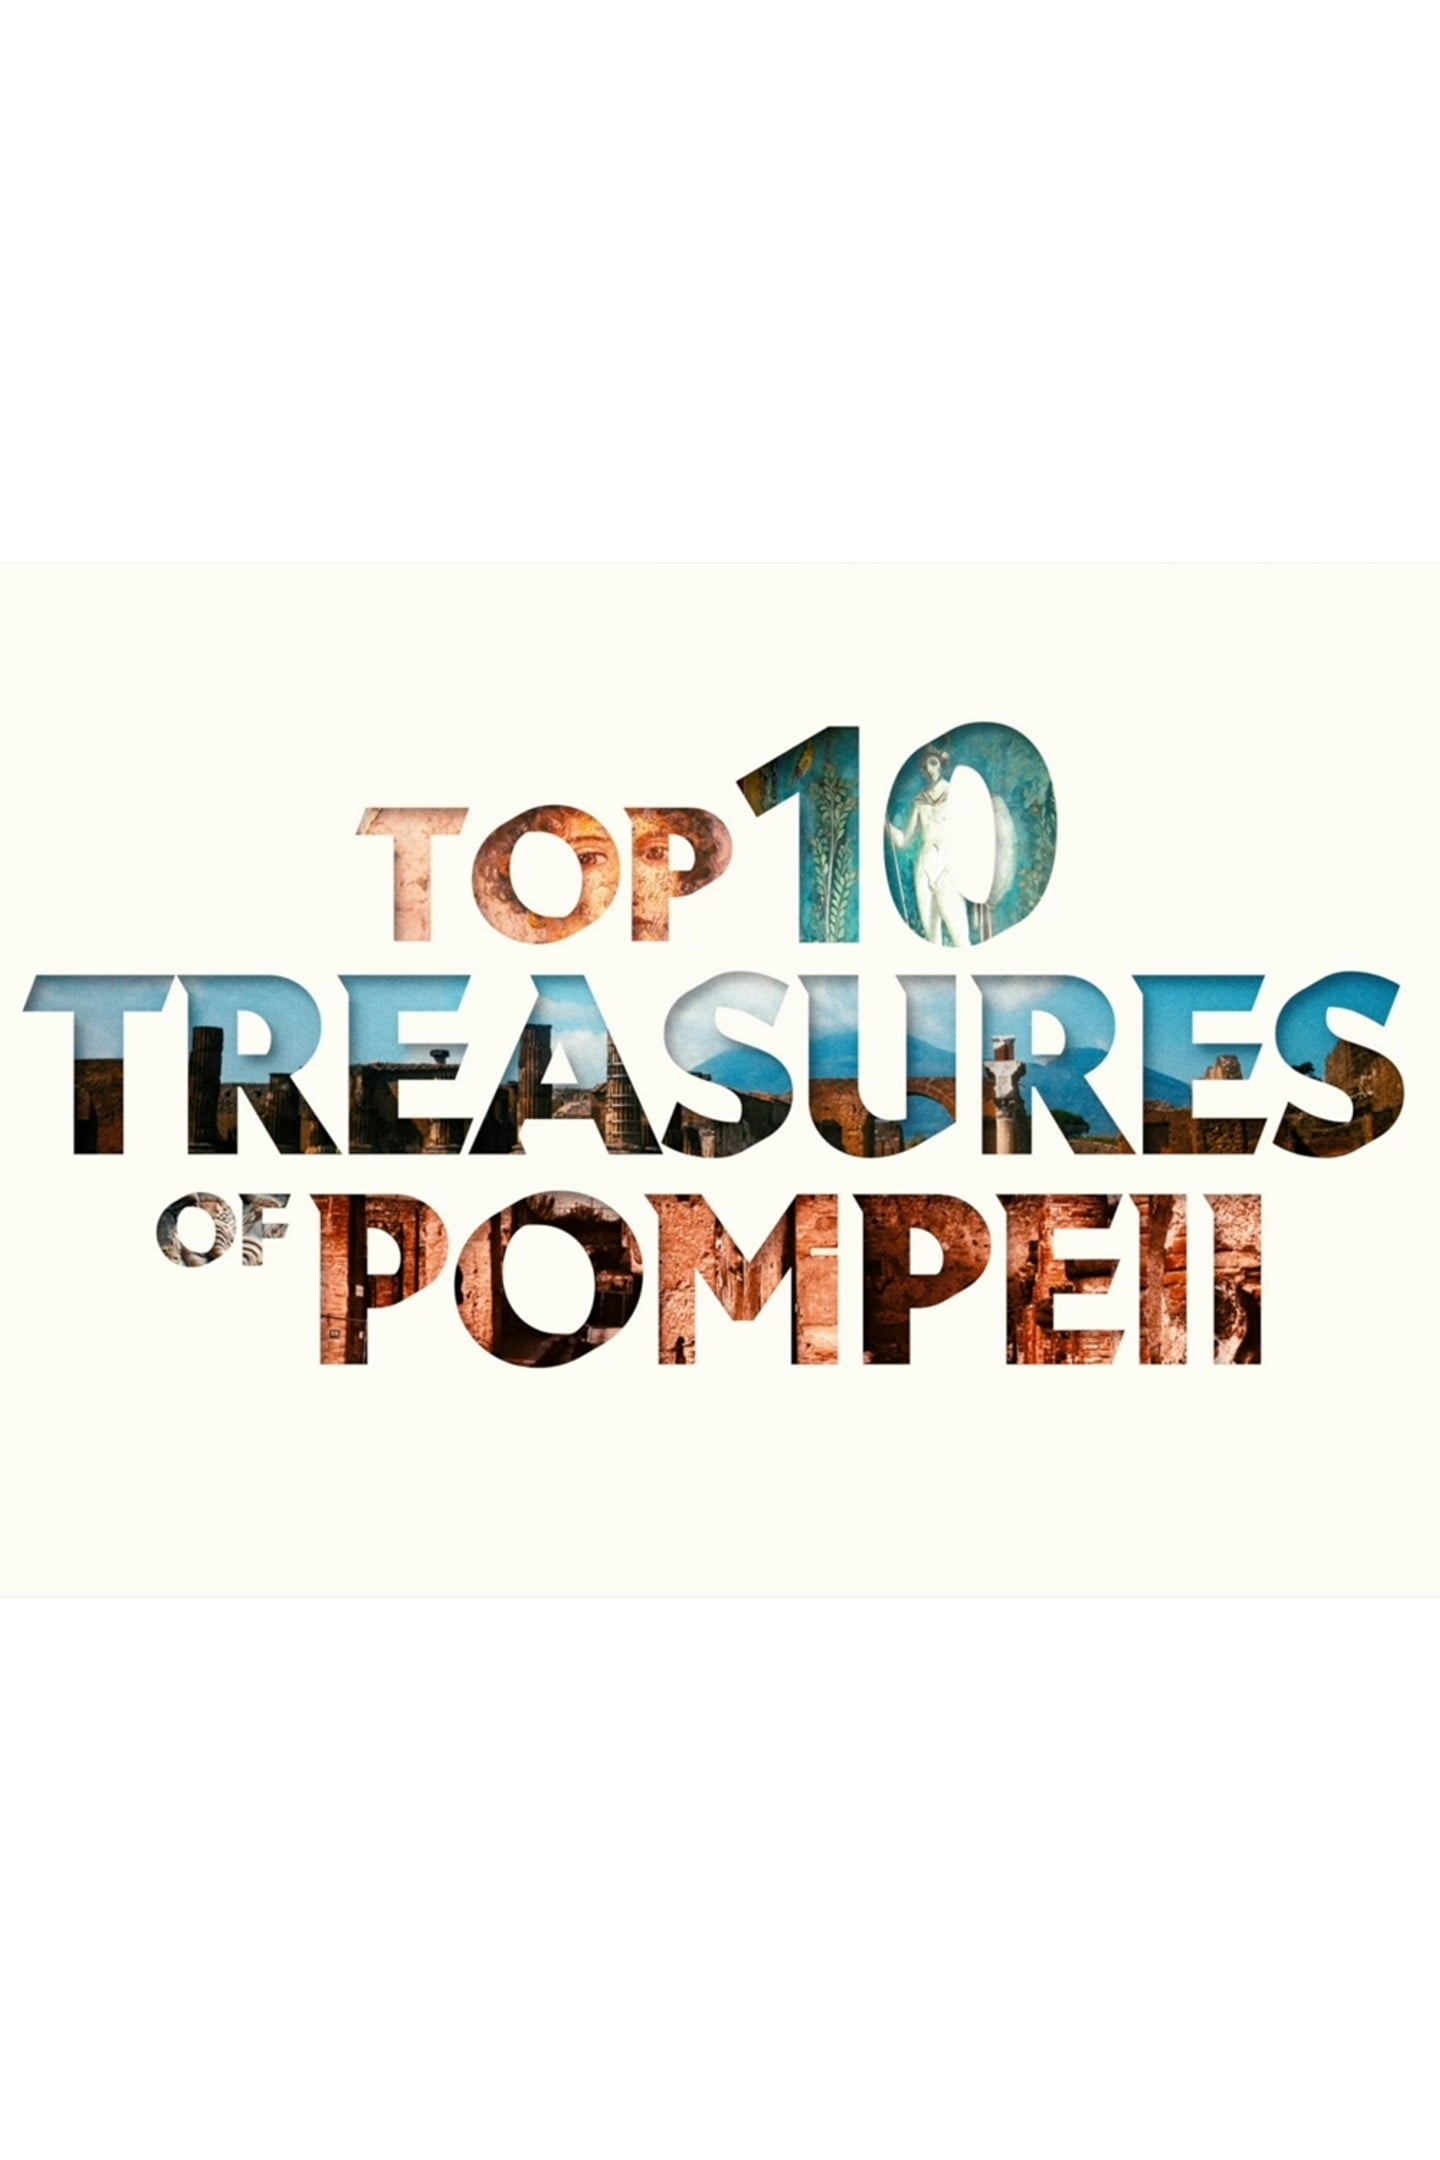 Top Ten Treasures Of Pompeii